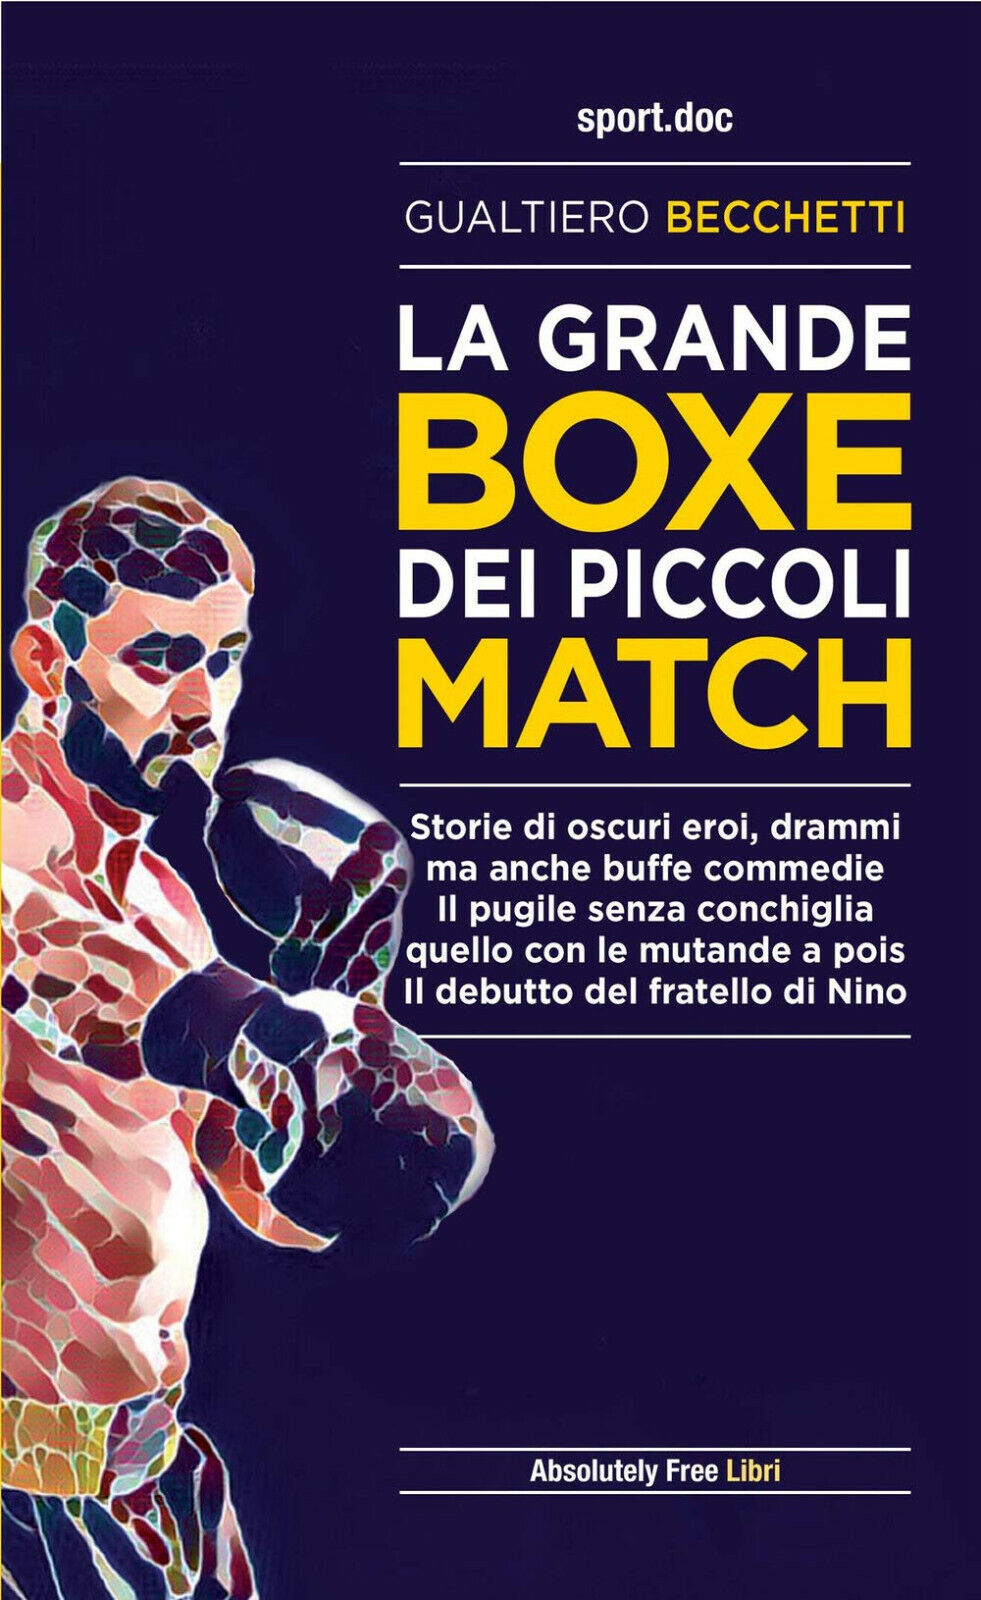 La grande boxe dei piccoli match - Gualtiero Becchetti - Absolutely Free, 2021 libro usato